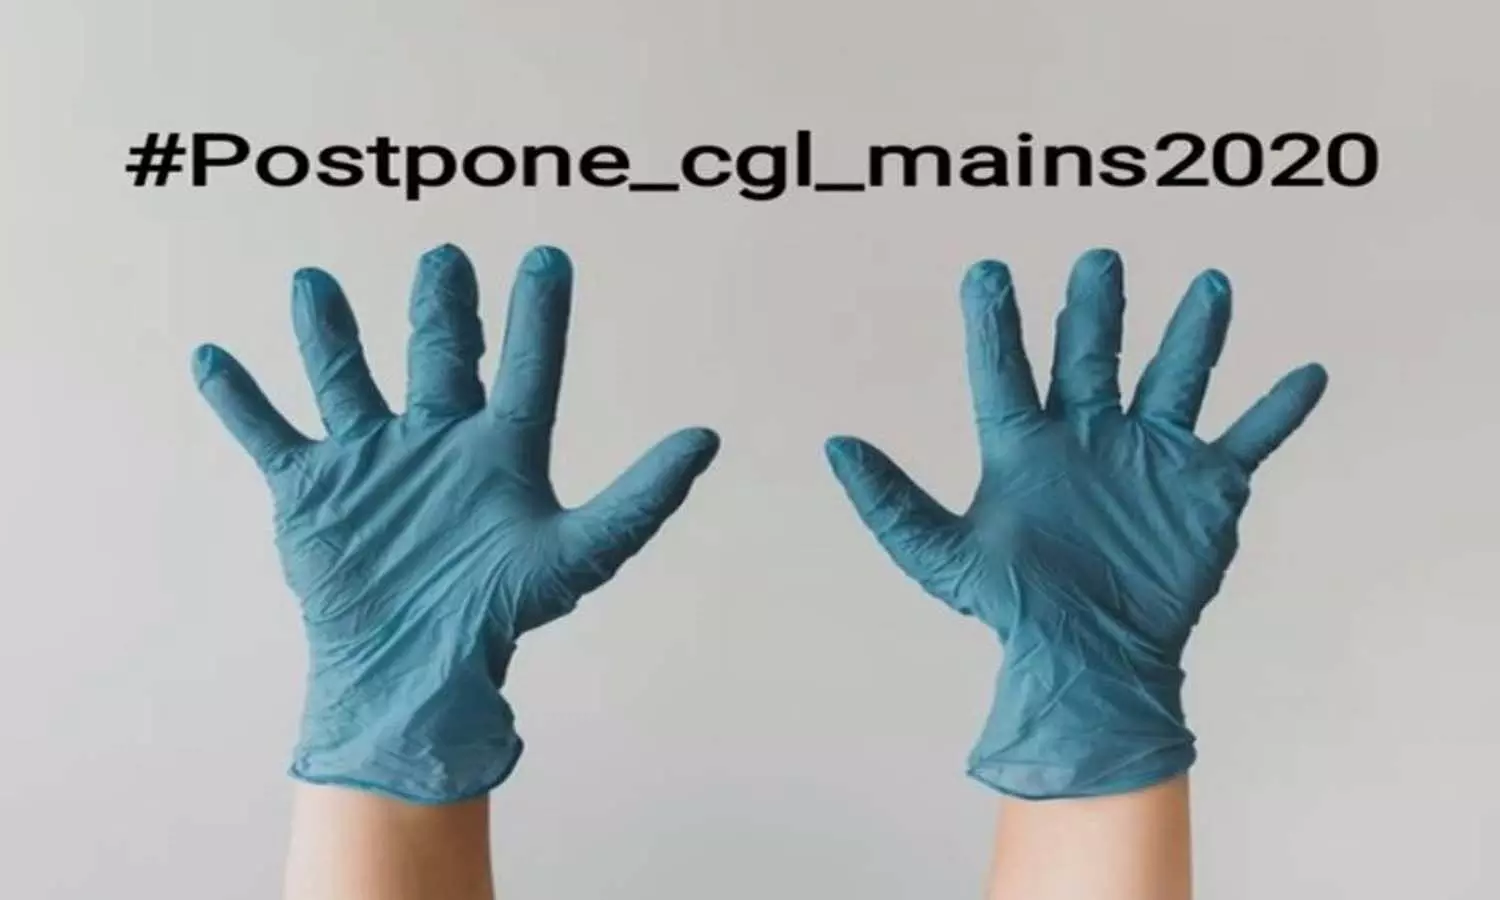 SSC CGL MAINS 2020: परीक्षा रद्द करने की उठी मांग, ट्वीटर पर #postpone_cgl_mains_2020 कर रहा ट्रेंड